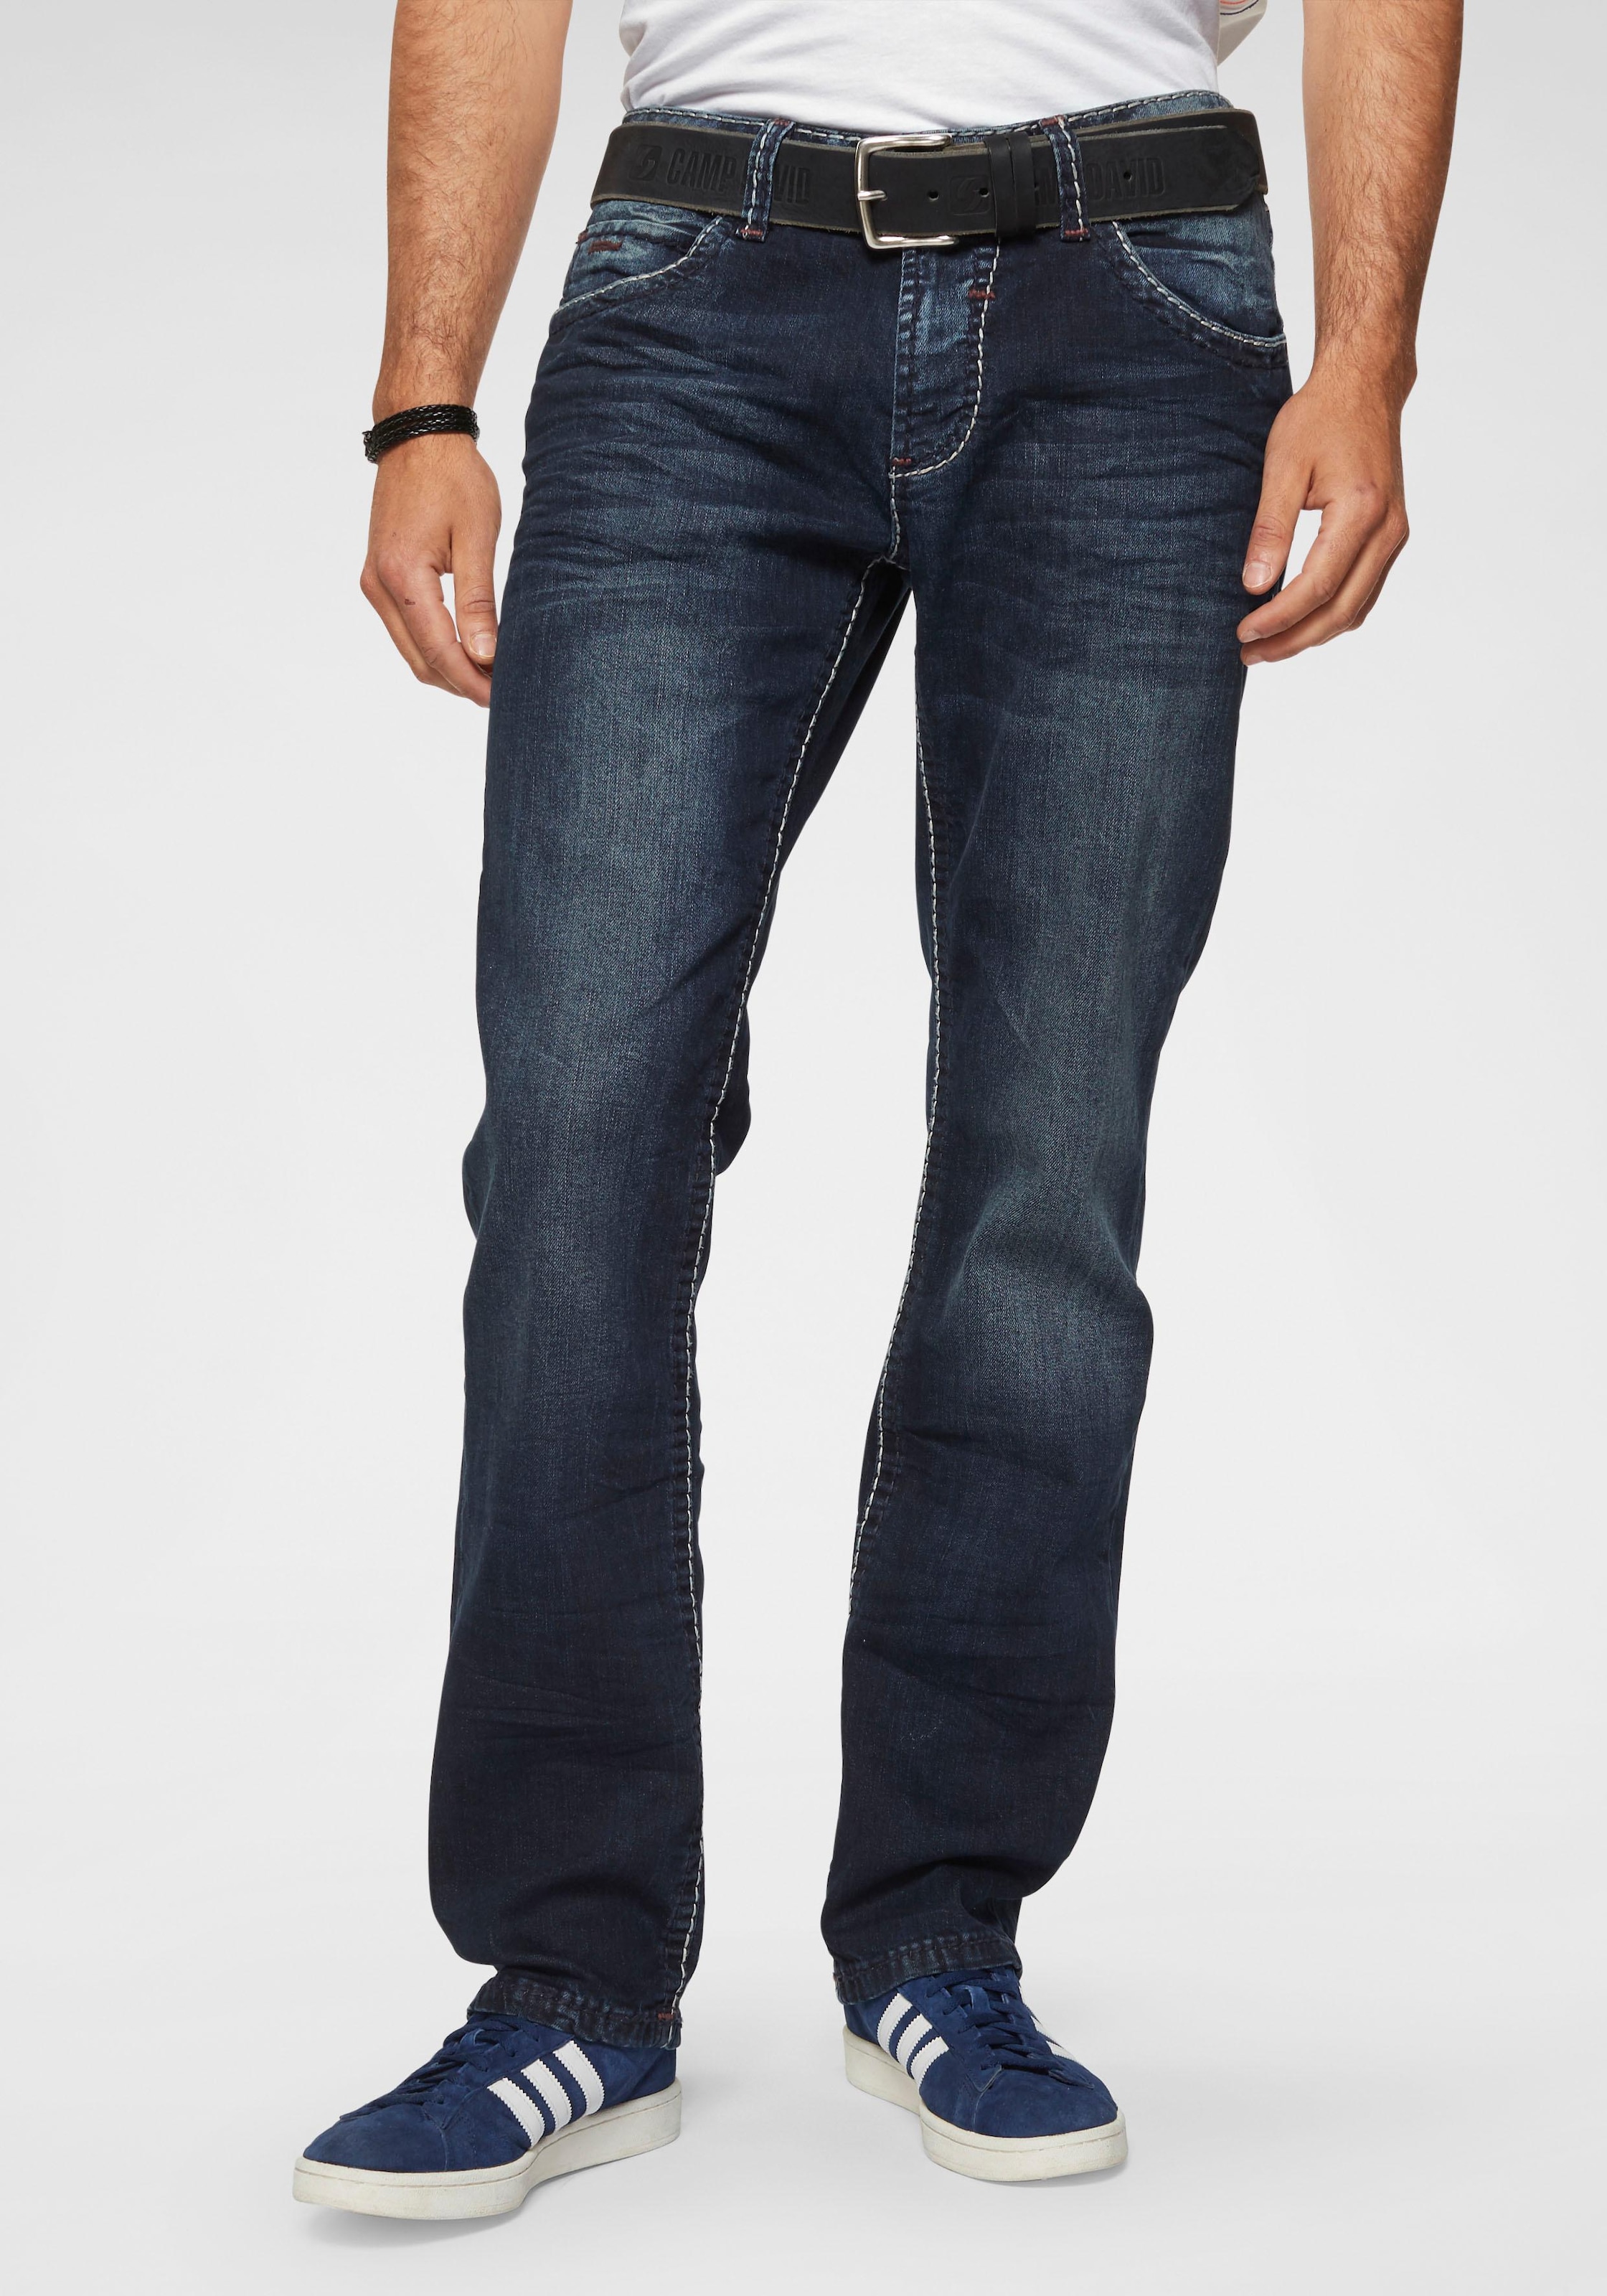 CAMP DAVID Straight-Jeans »NI:CO:R611«, mit markanten Steppnähten bequem  kaufen